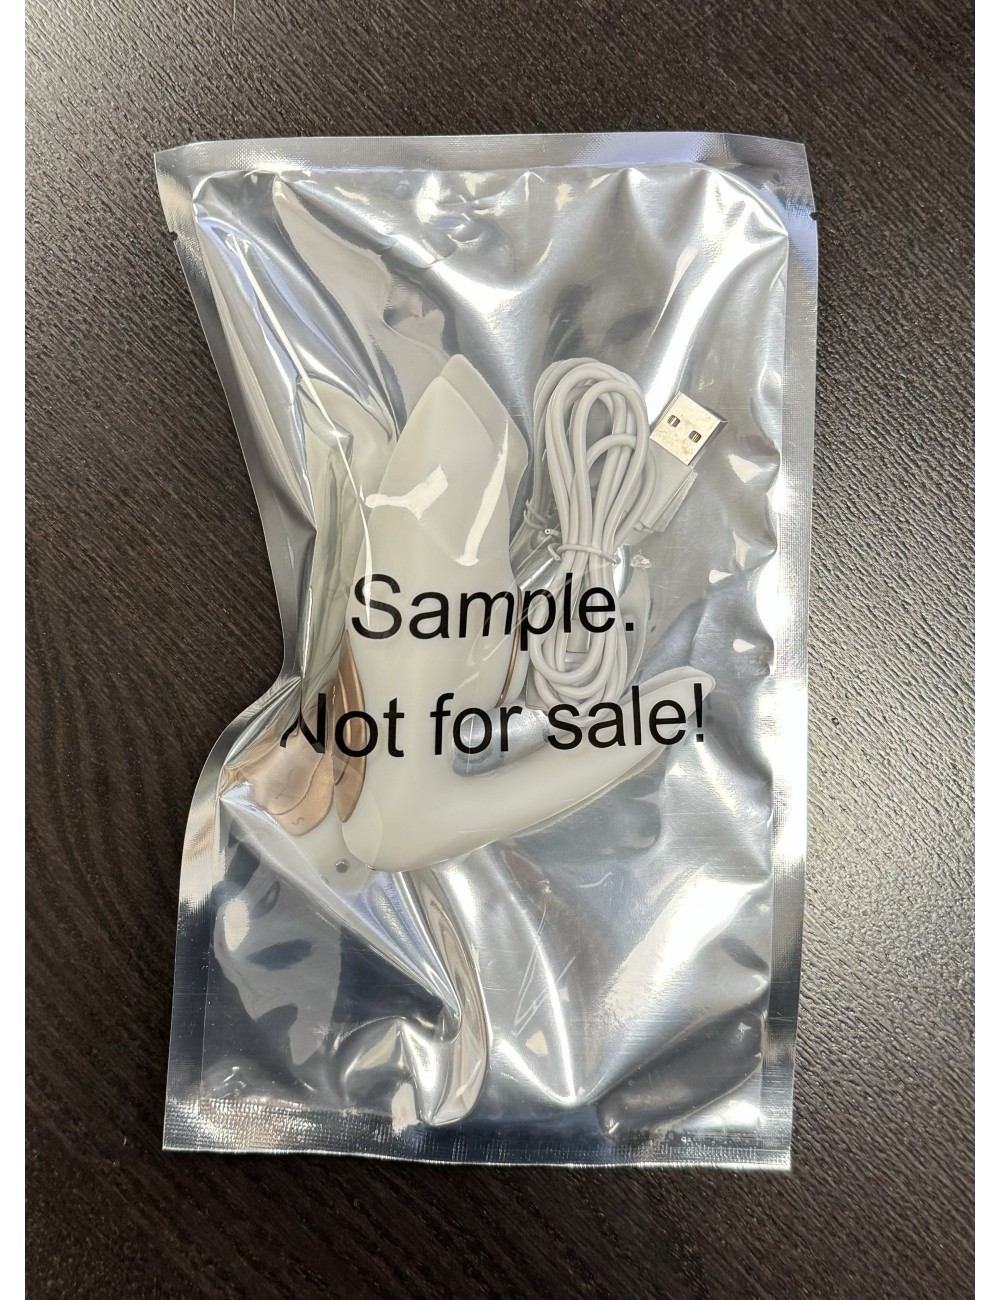 Echantillon Pro 4 Couples - Blanc et Or rose Sample Not For Sale !